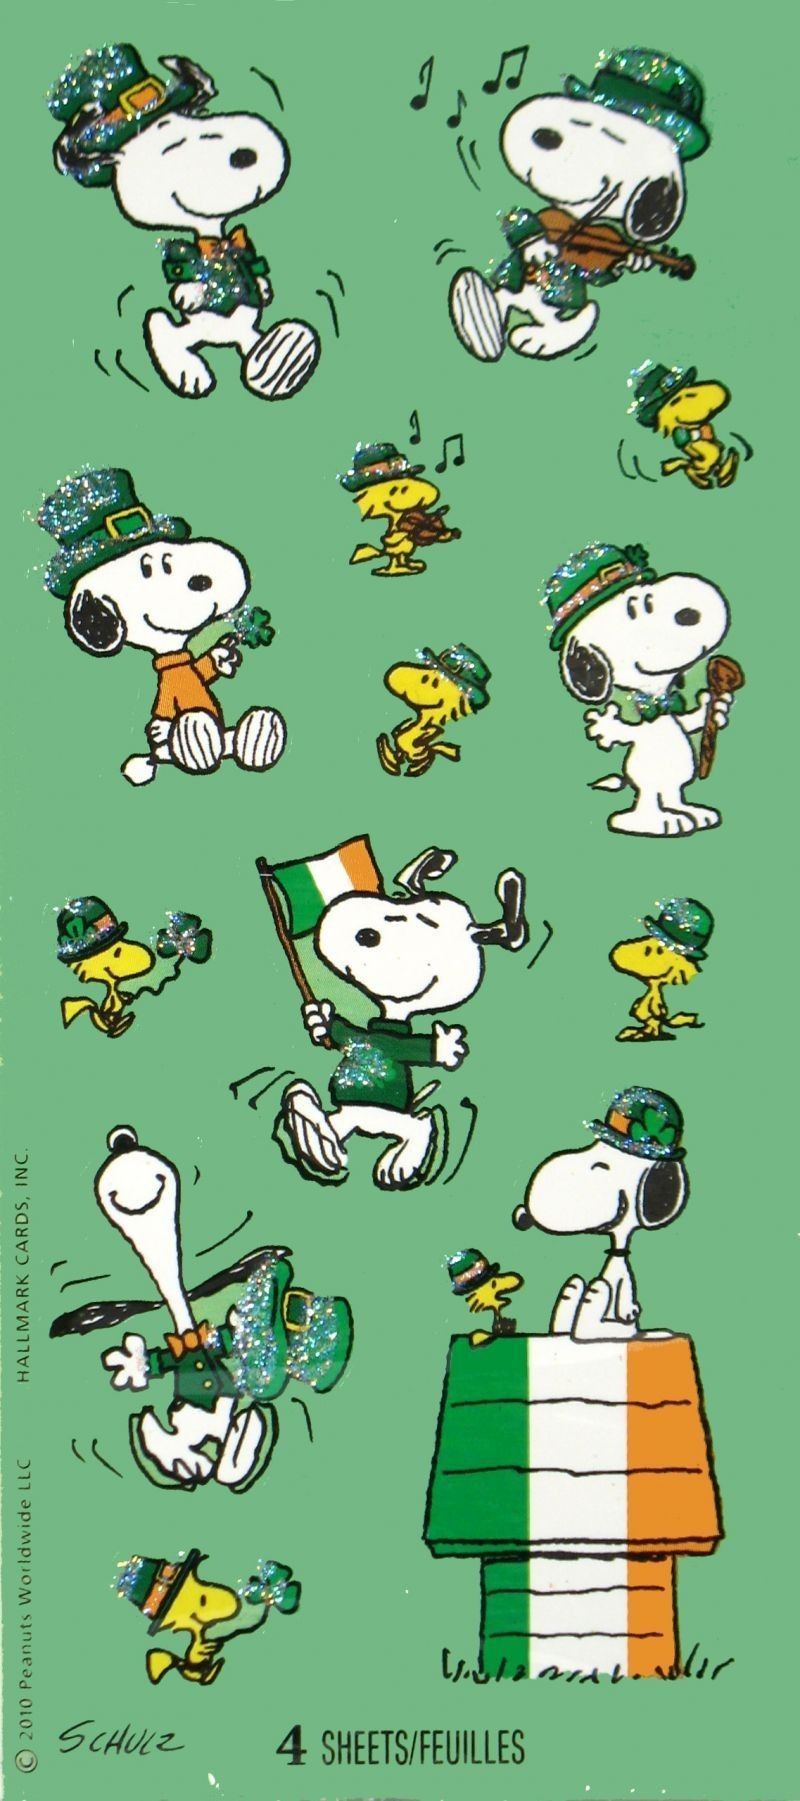 St. patrick's day. Snoopy, Snoopy love